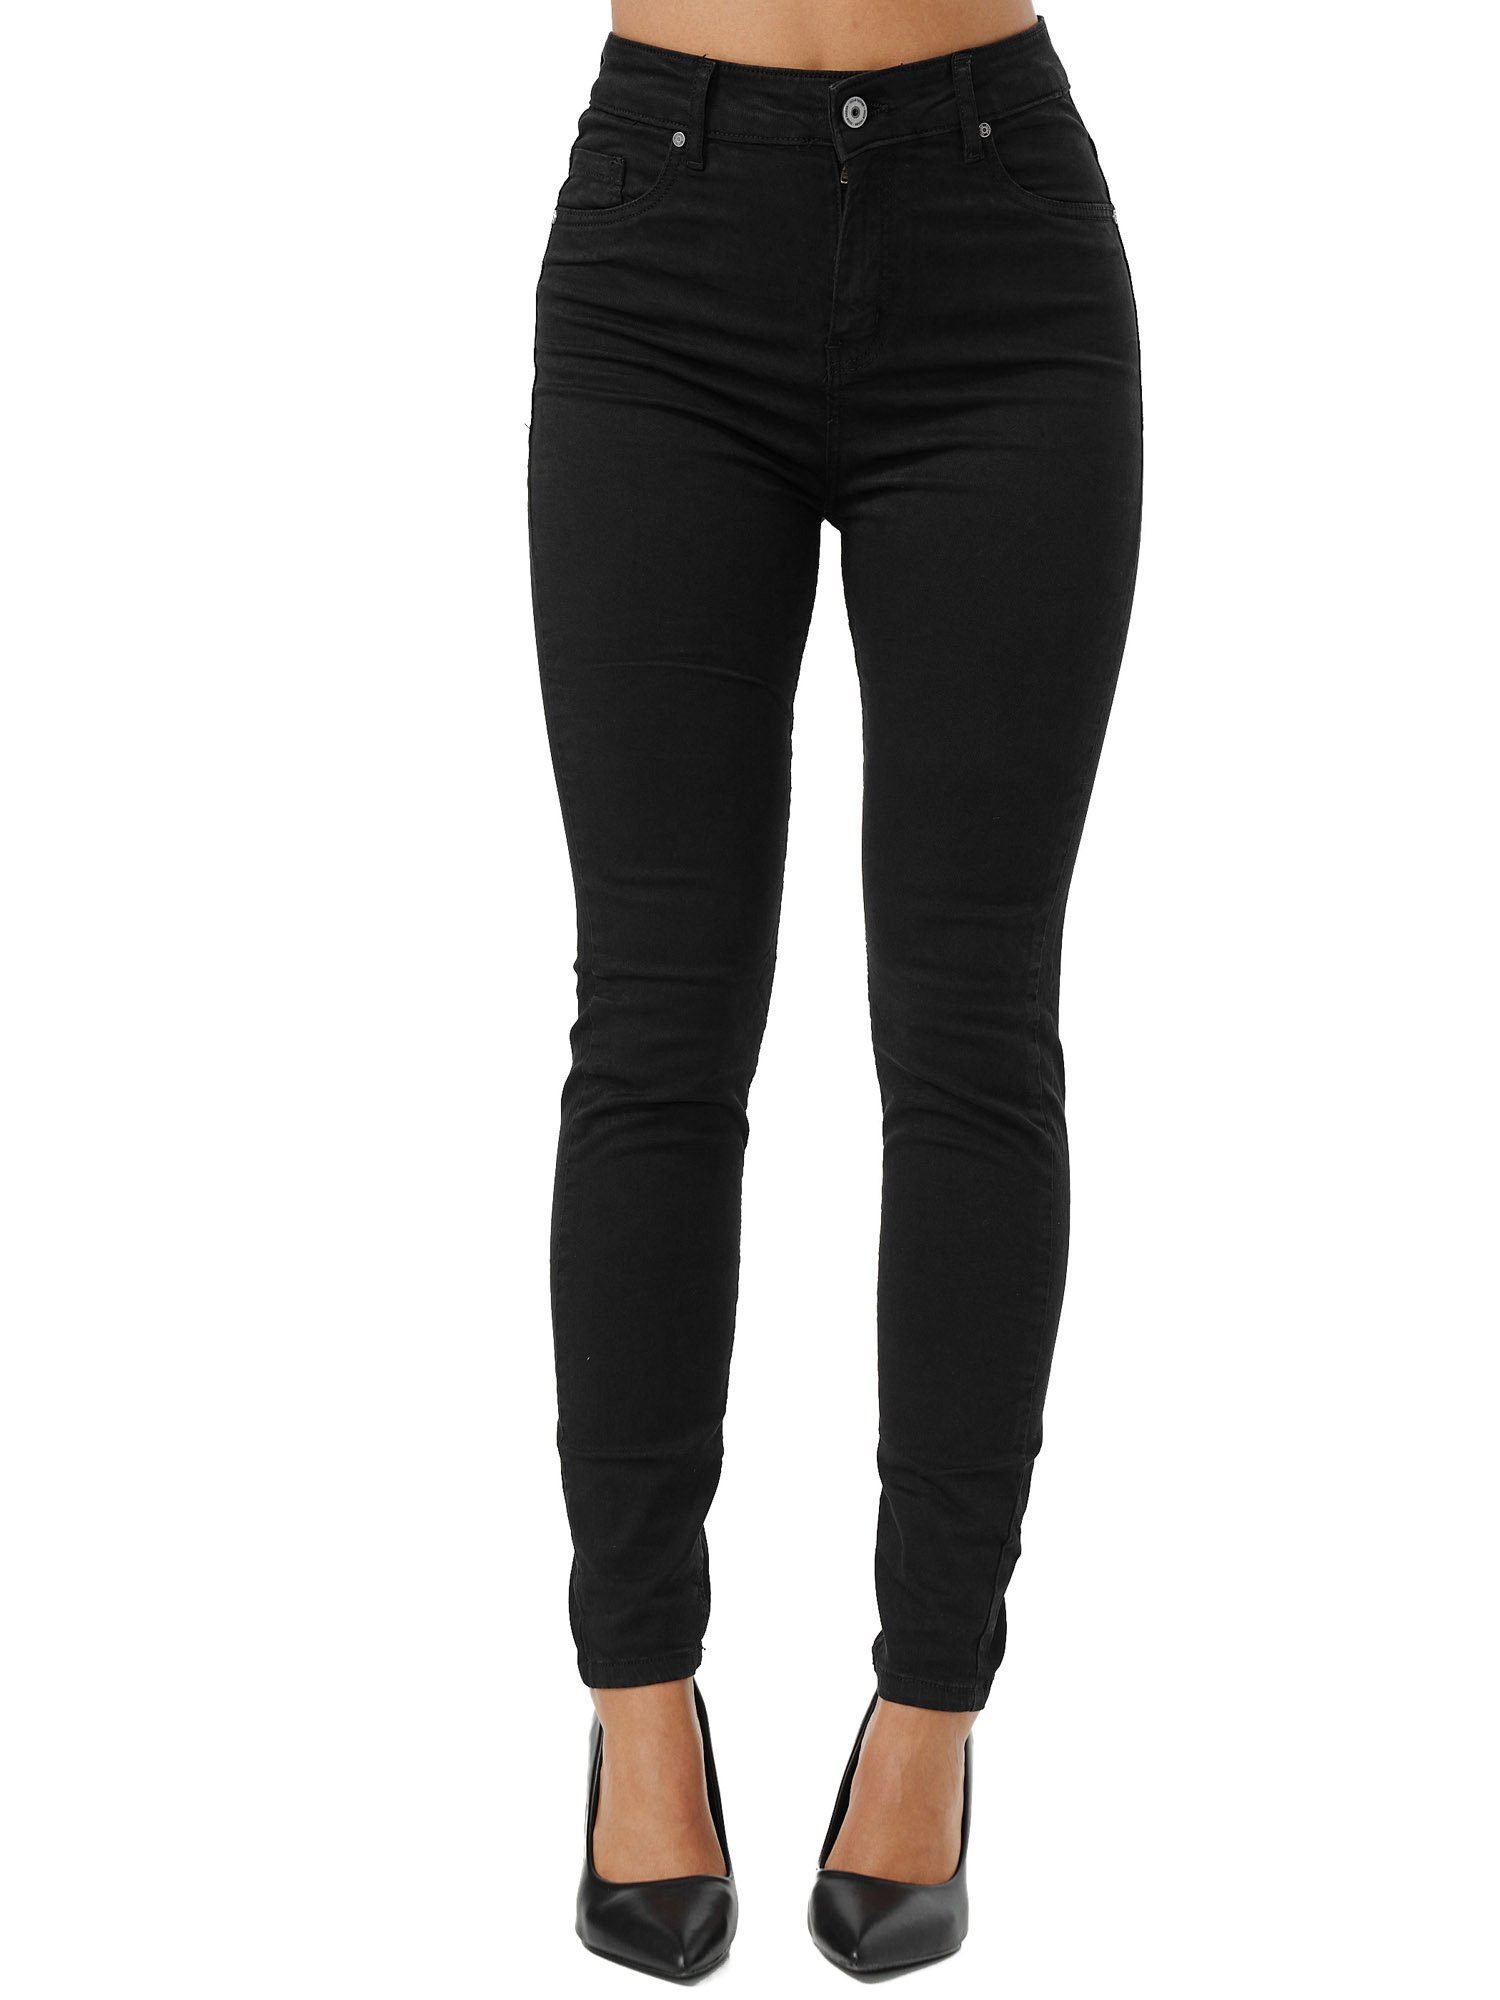 Tazzio Skinny-fit-Jeans F103 Damen High Rise Jeanshose schwarz